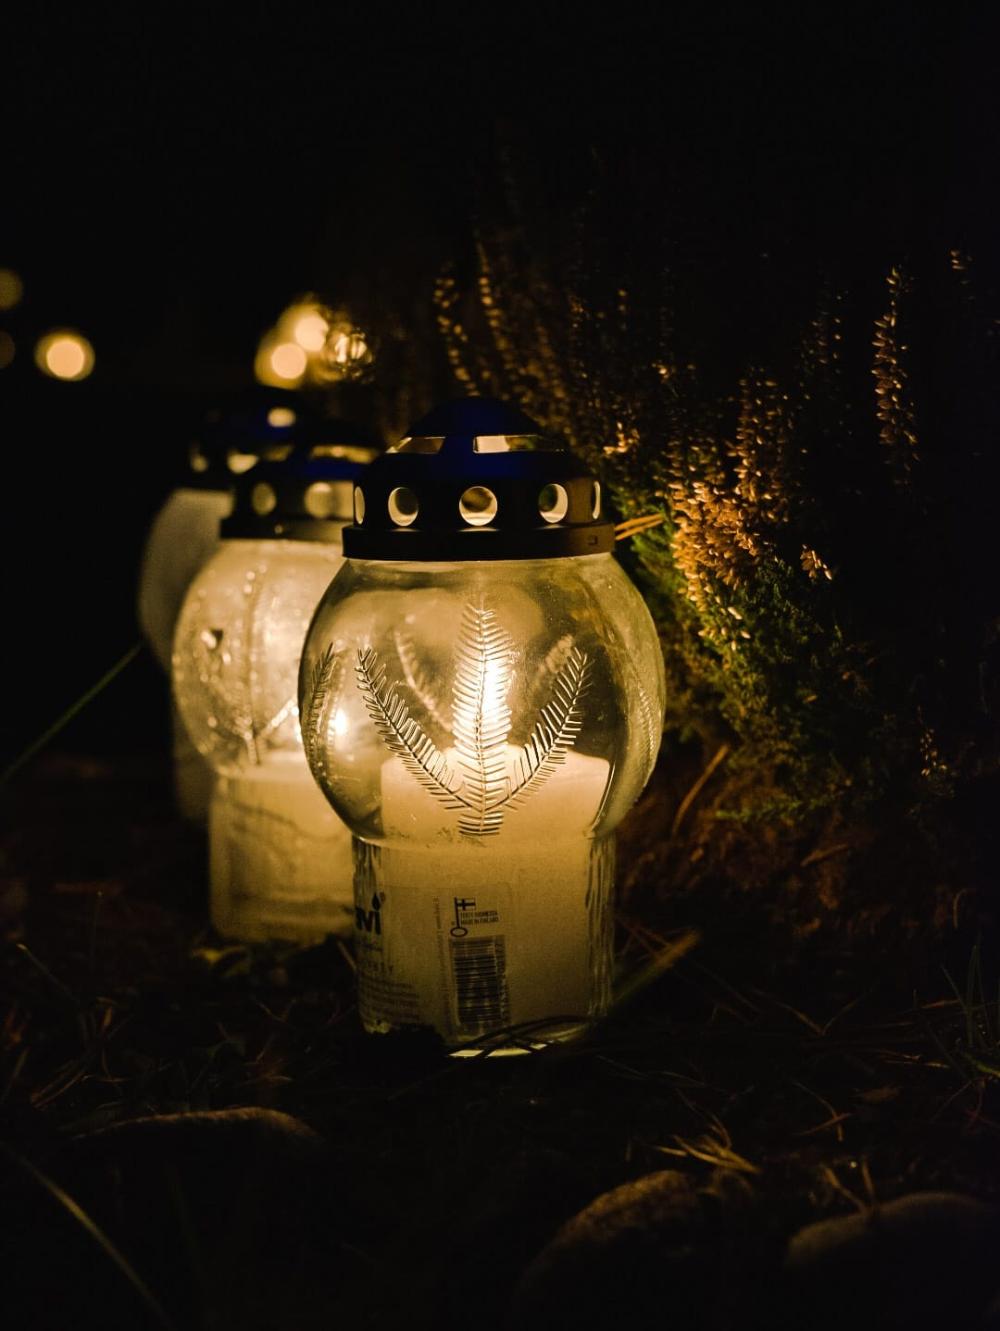 Kynttilälyhtyjä sytytettyinä pimeässä illassa, taustalla havuja ja valopisteitä